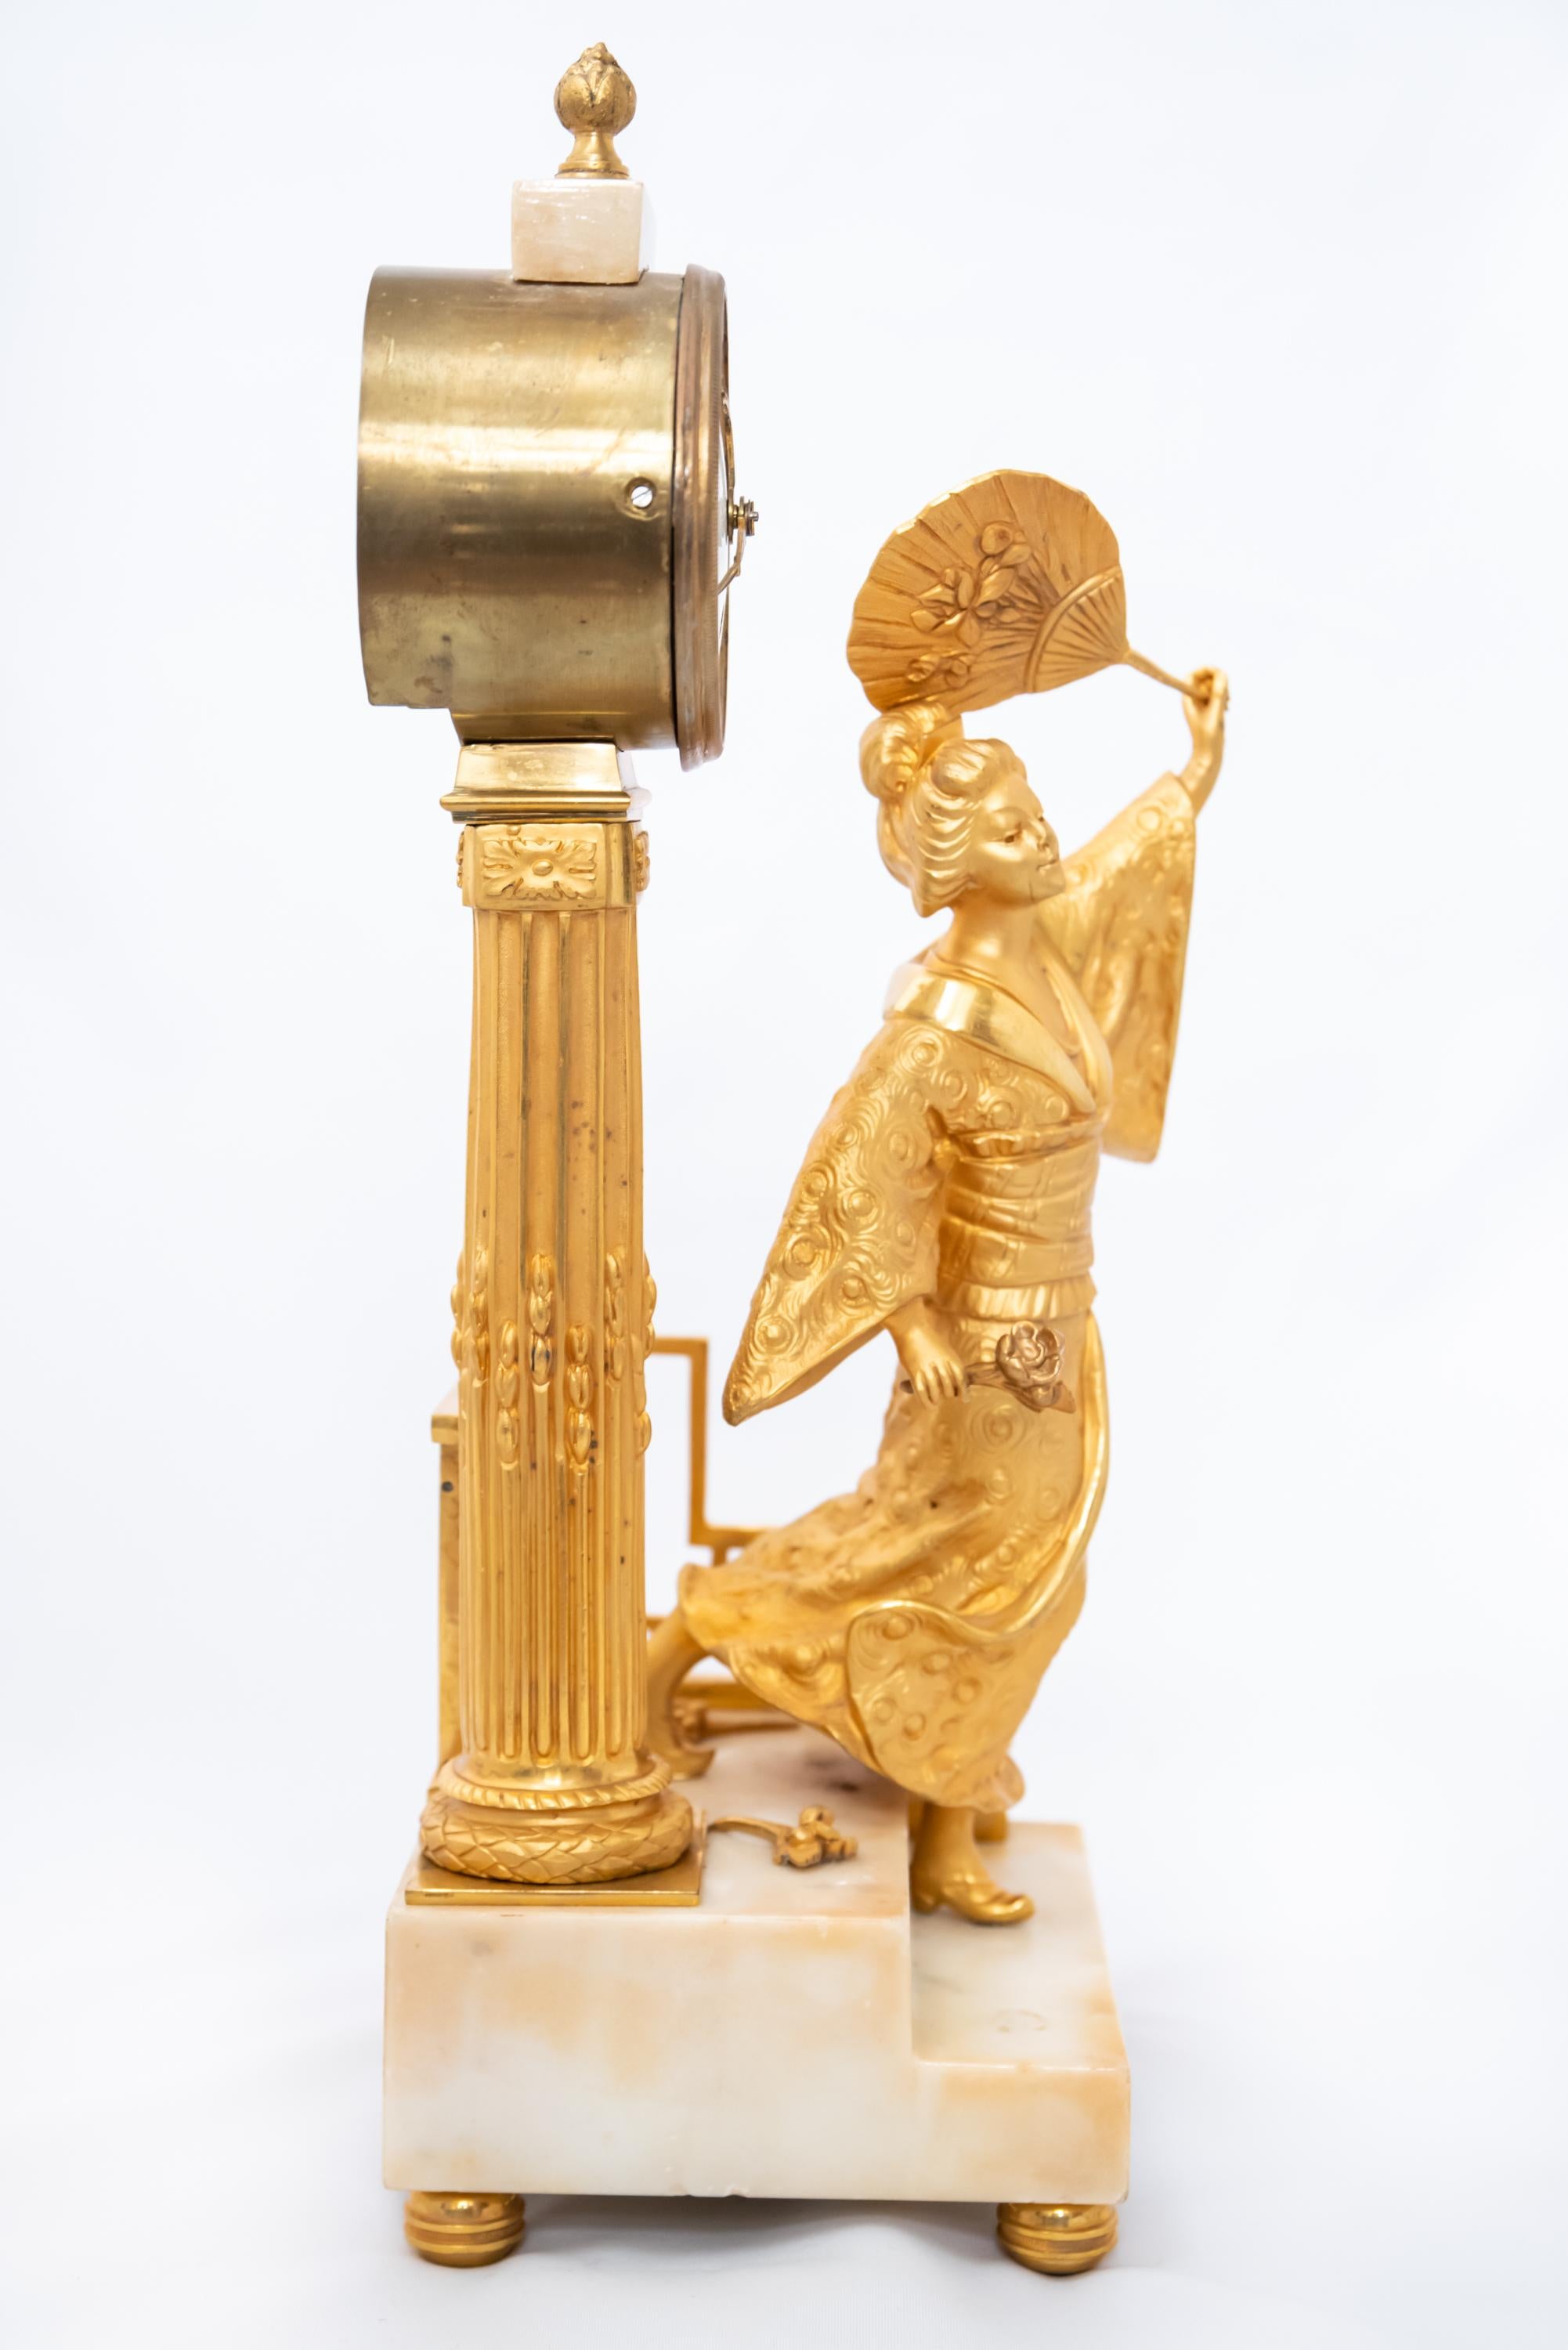 Französische feuervergoldete Bronzeuhr mit Marmorsockel, die eine japanische Frau darstellt, Epoche Ludwig XVI. oder Empire, 1790-1815. Der Seidenfadenmechanismus ist in gutem Zustand mit Schlüssel und Pendel.